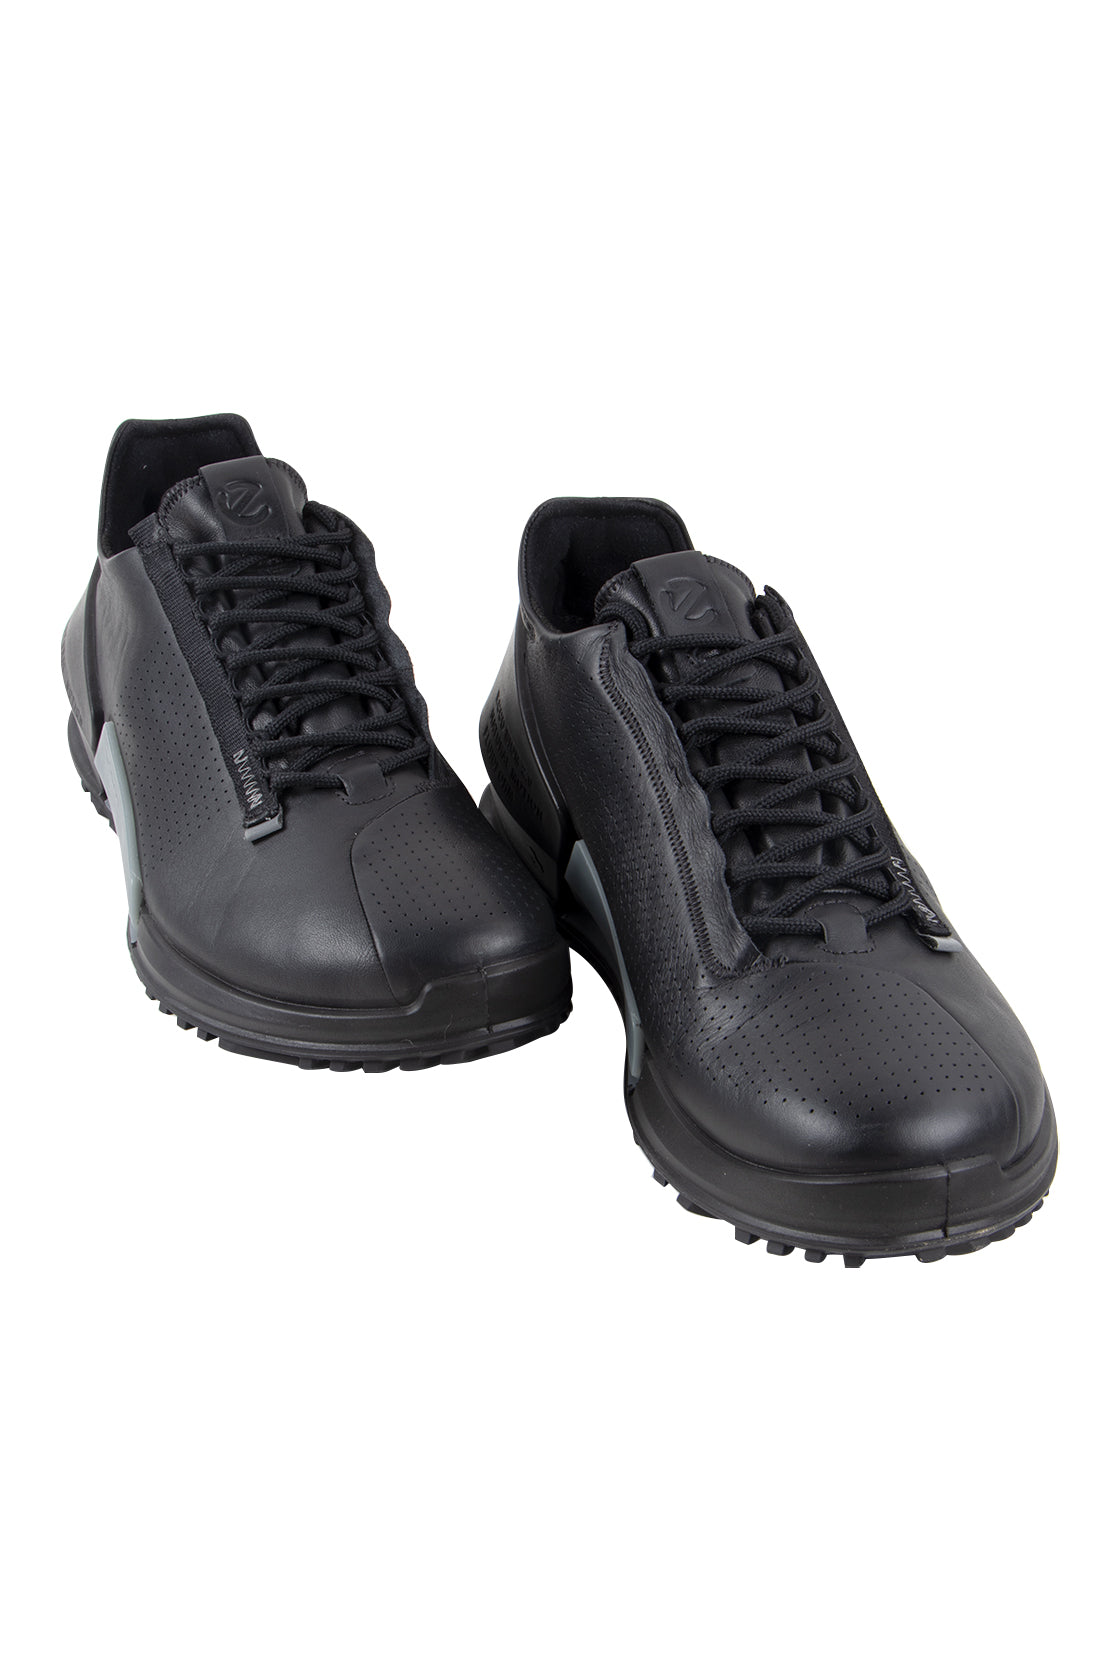 ECCO Outdoor Shoe Black